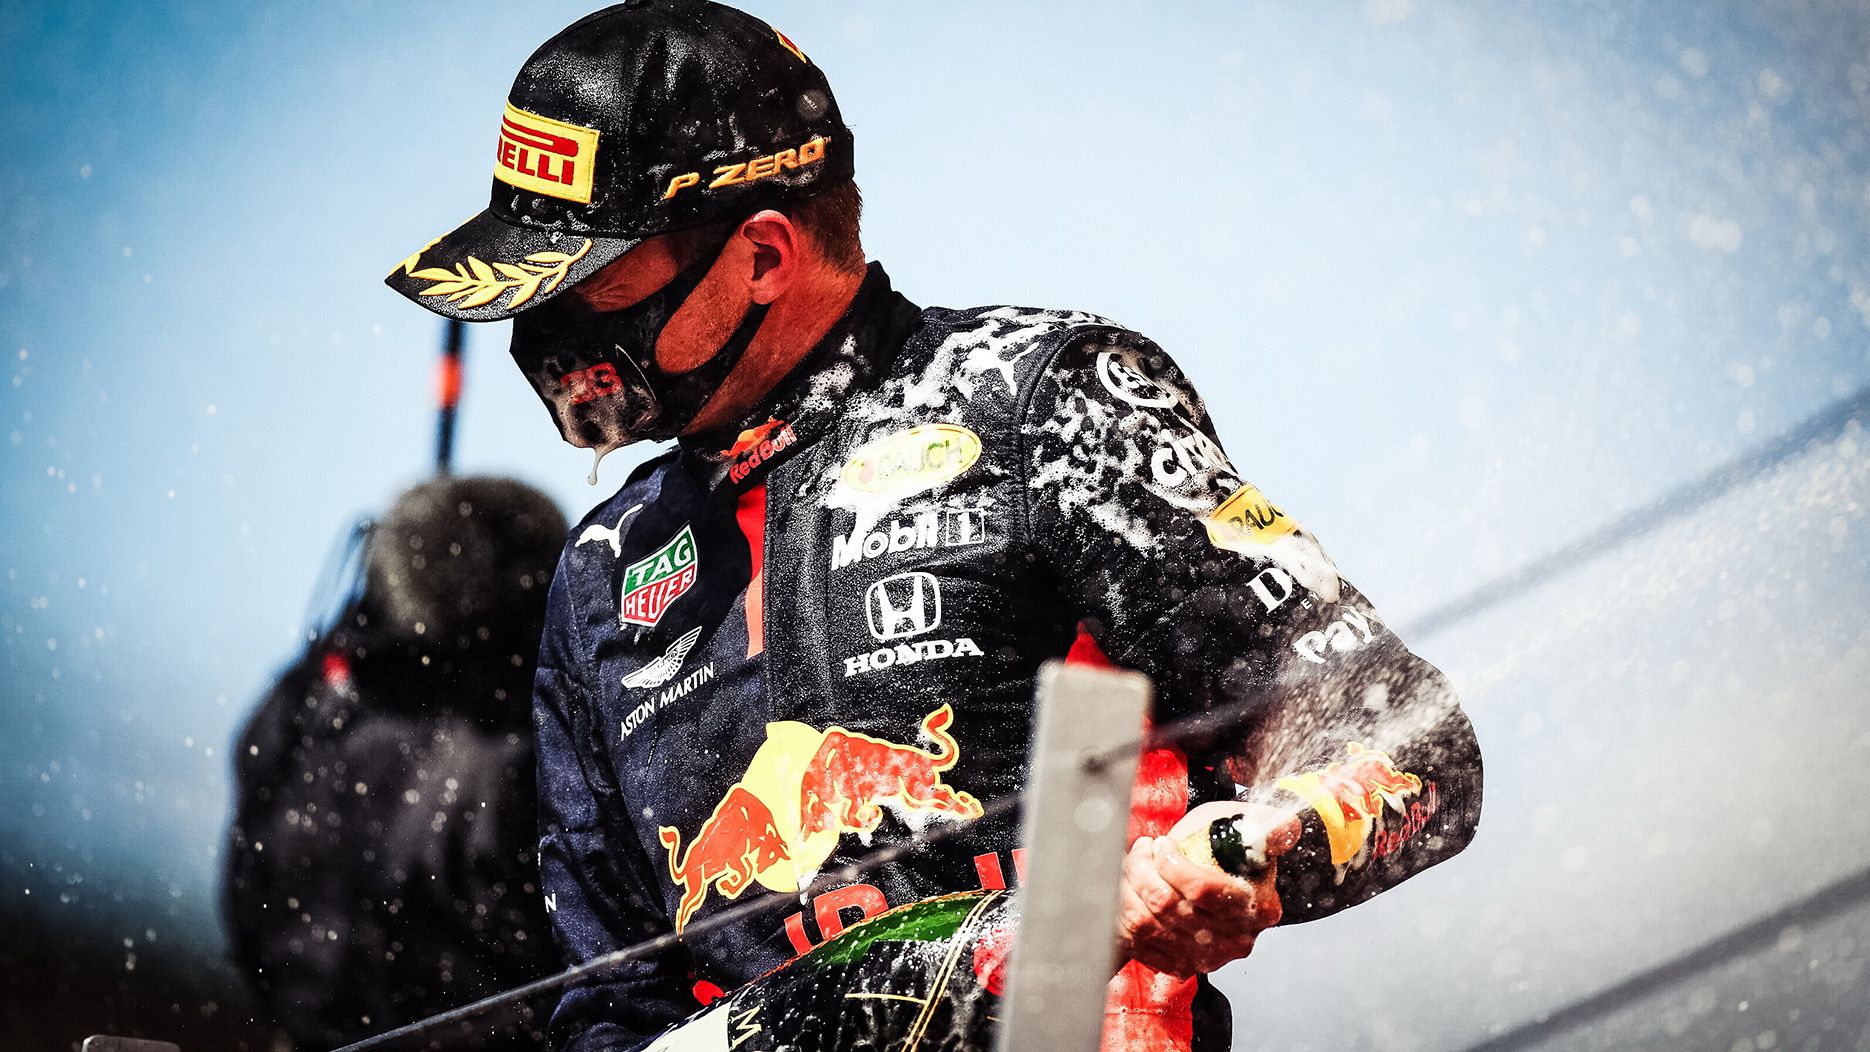  Max Verstappen dari tim Aston Martin Red Bull Racing berhasil naik podium kedua di Seri Formula 1 GP Britania Raya.*/HPM 